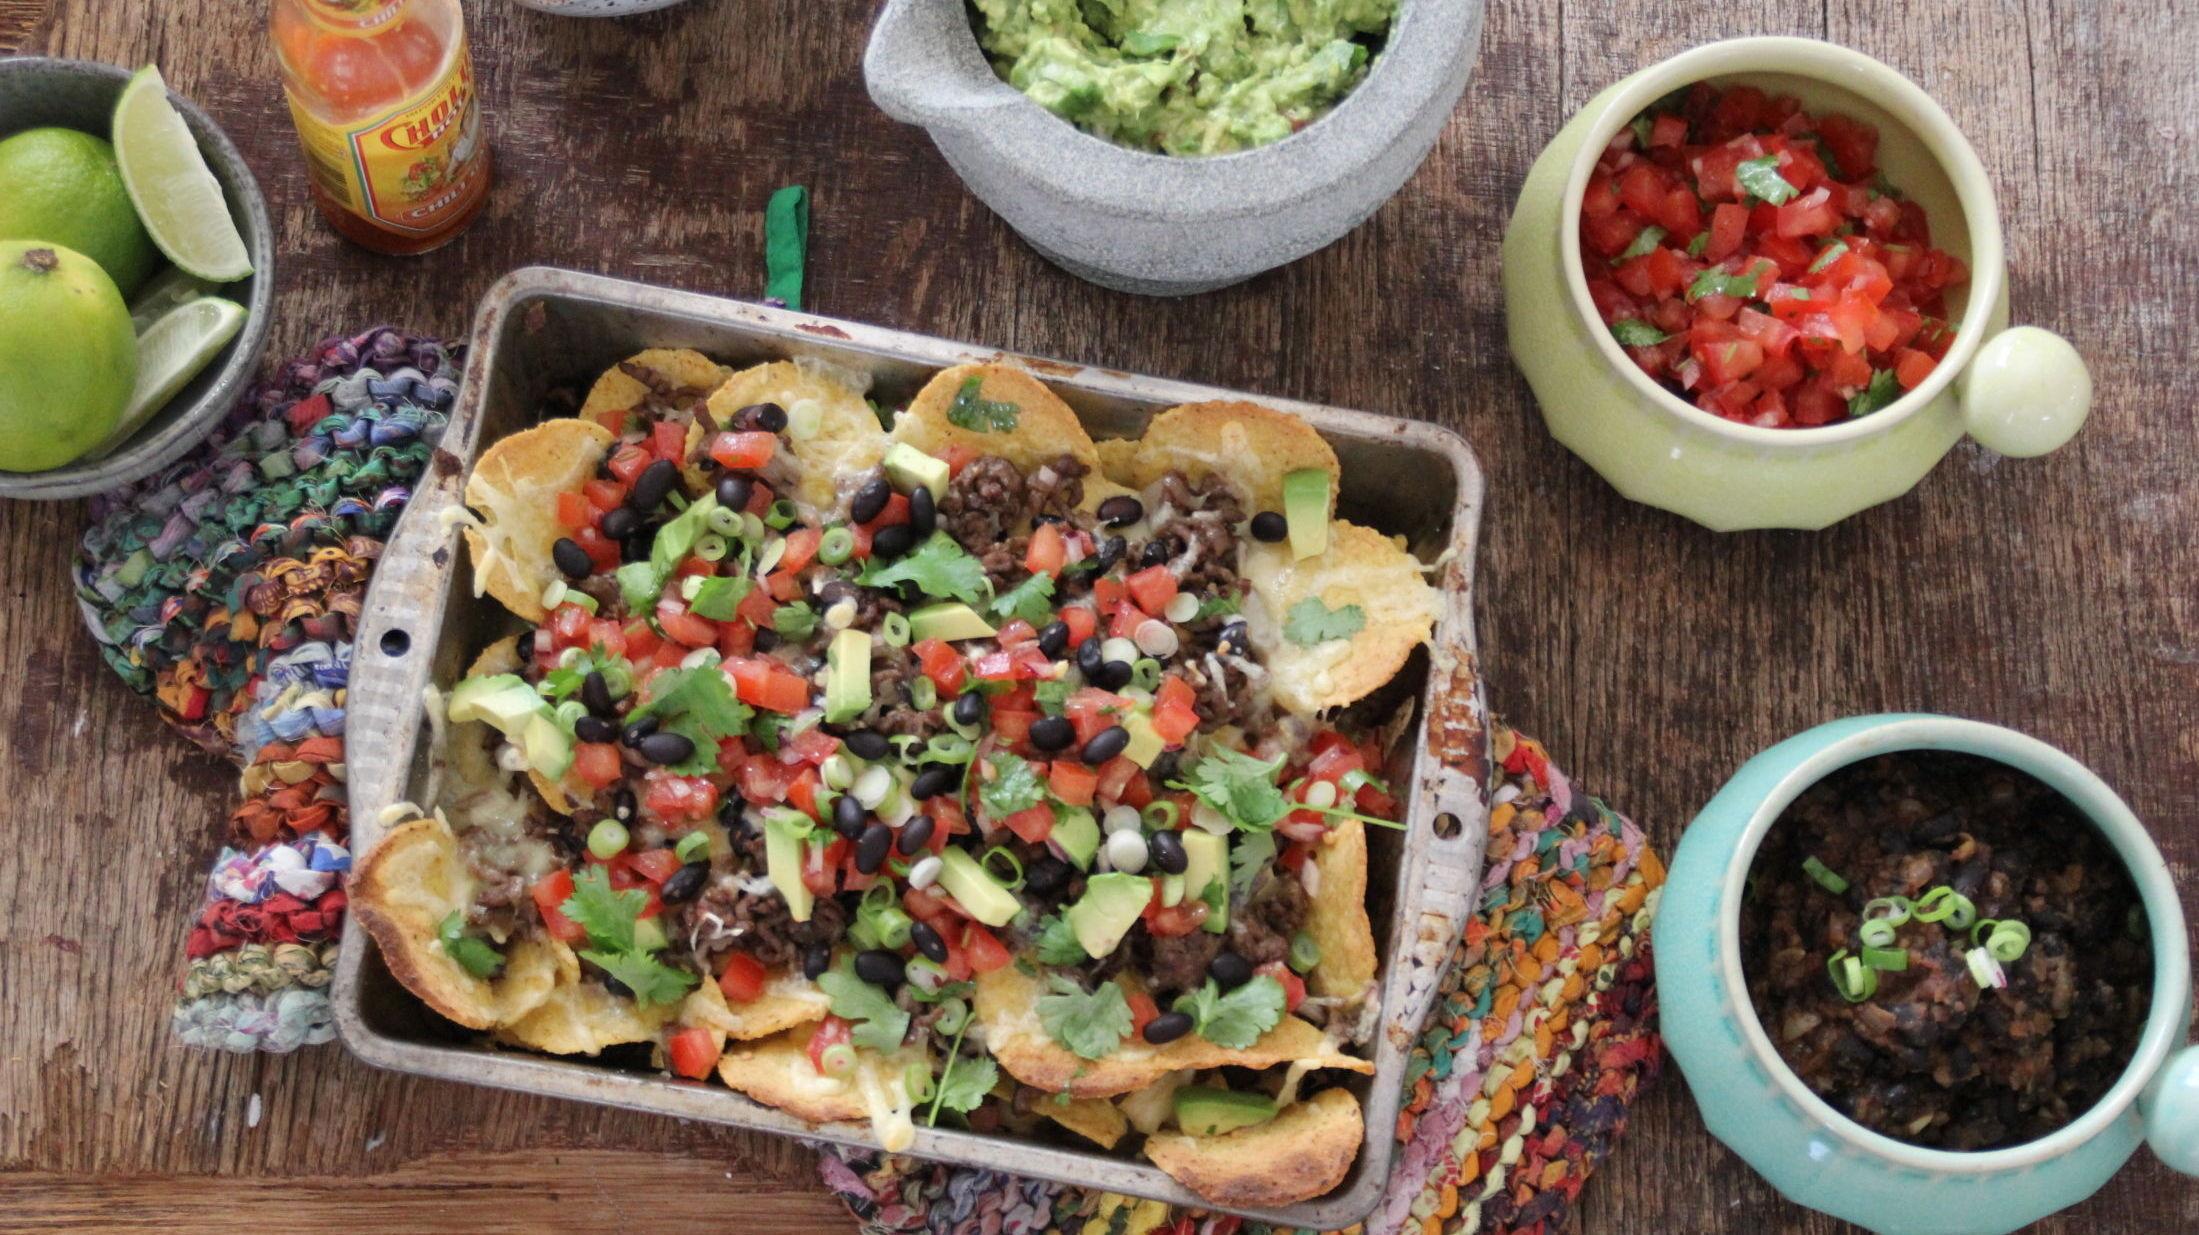 FIESTA: Meksikansk-inspirert nachos servert med frisk salsa, guacamole og rømme til er et enkelt måltid full av deilige smaker, som både kan serveres til venner eller nytes alene. Foto: Ina Johnsen